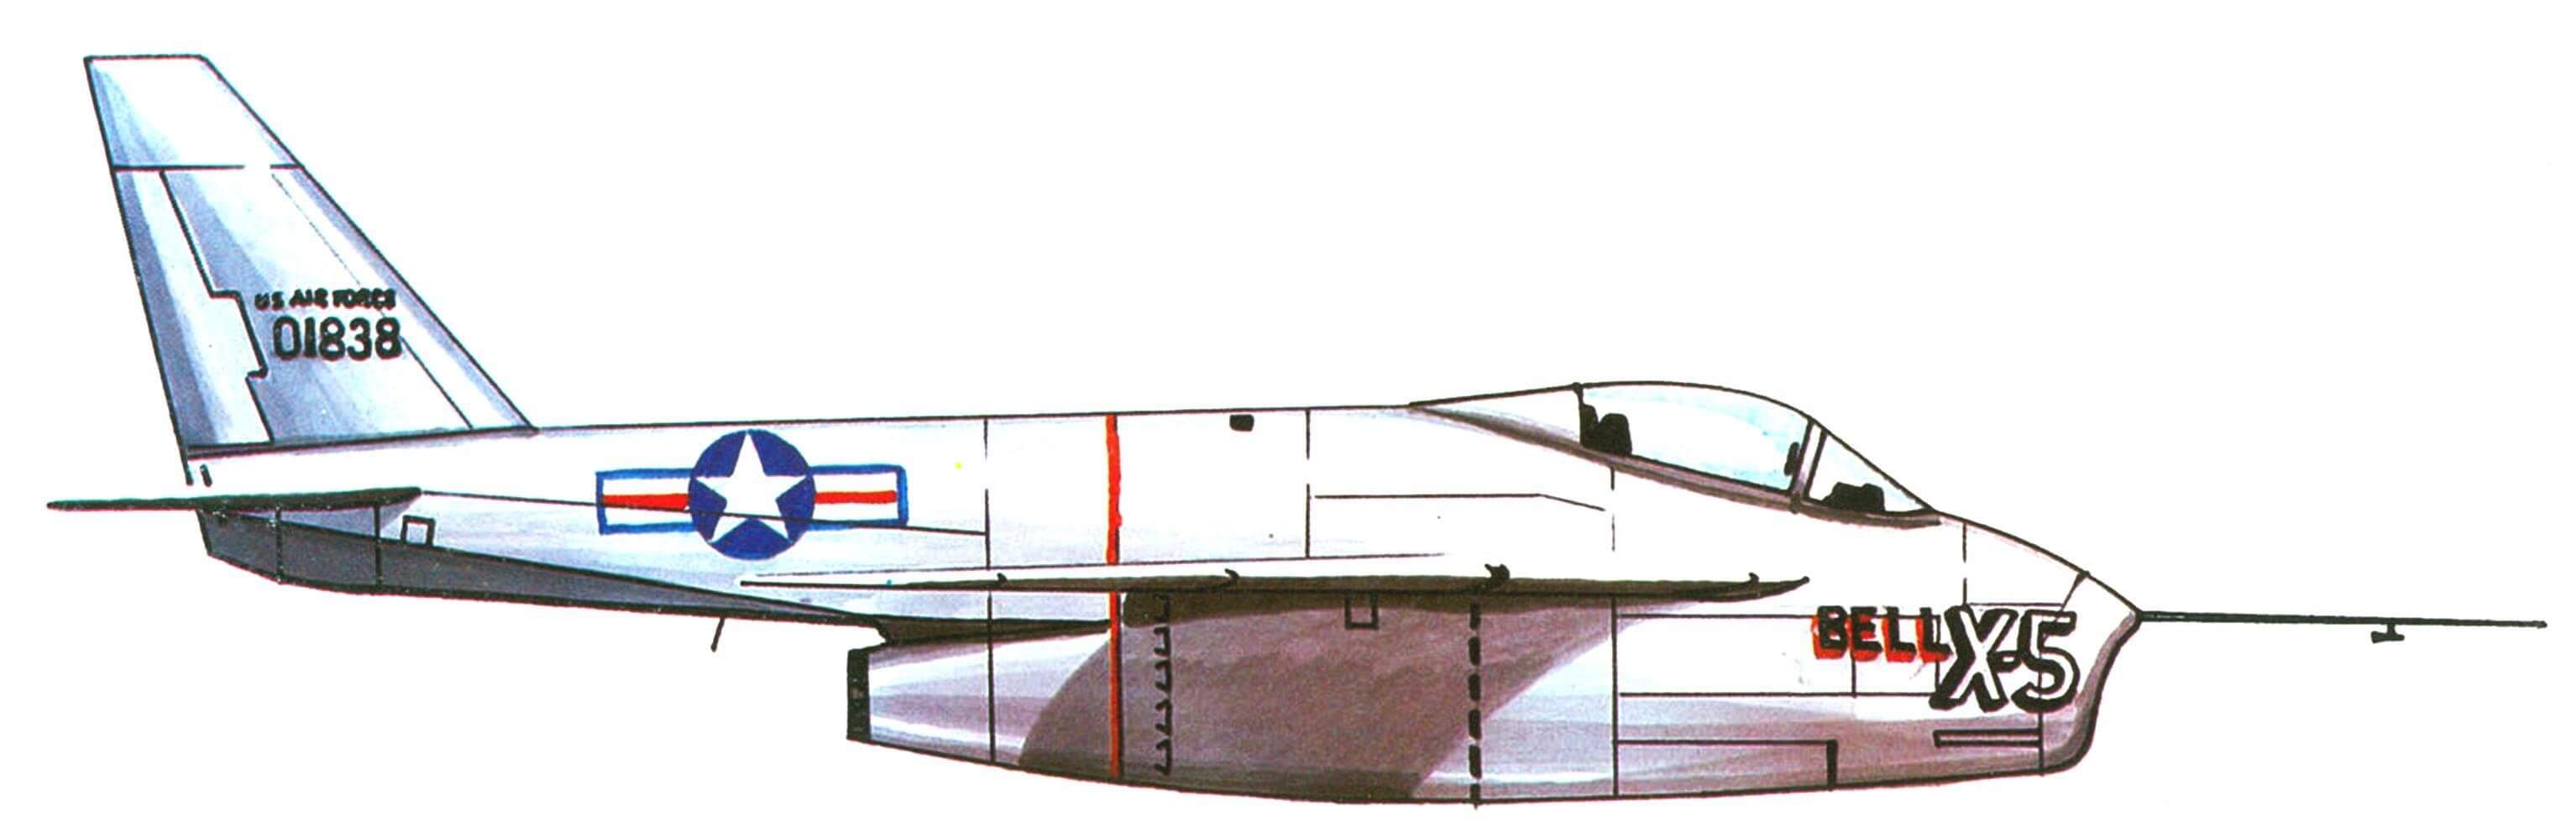 Первый экземпляр самолета Х-5, 1952 год.